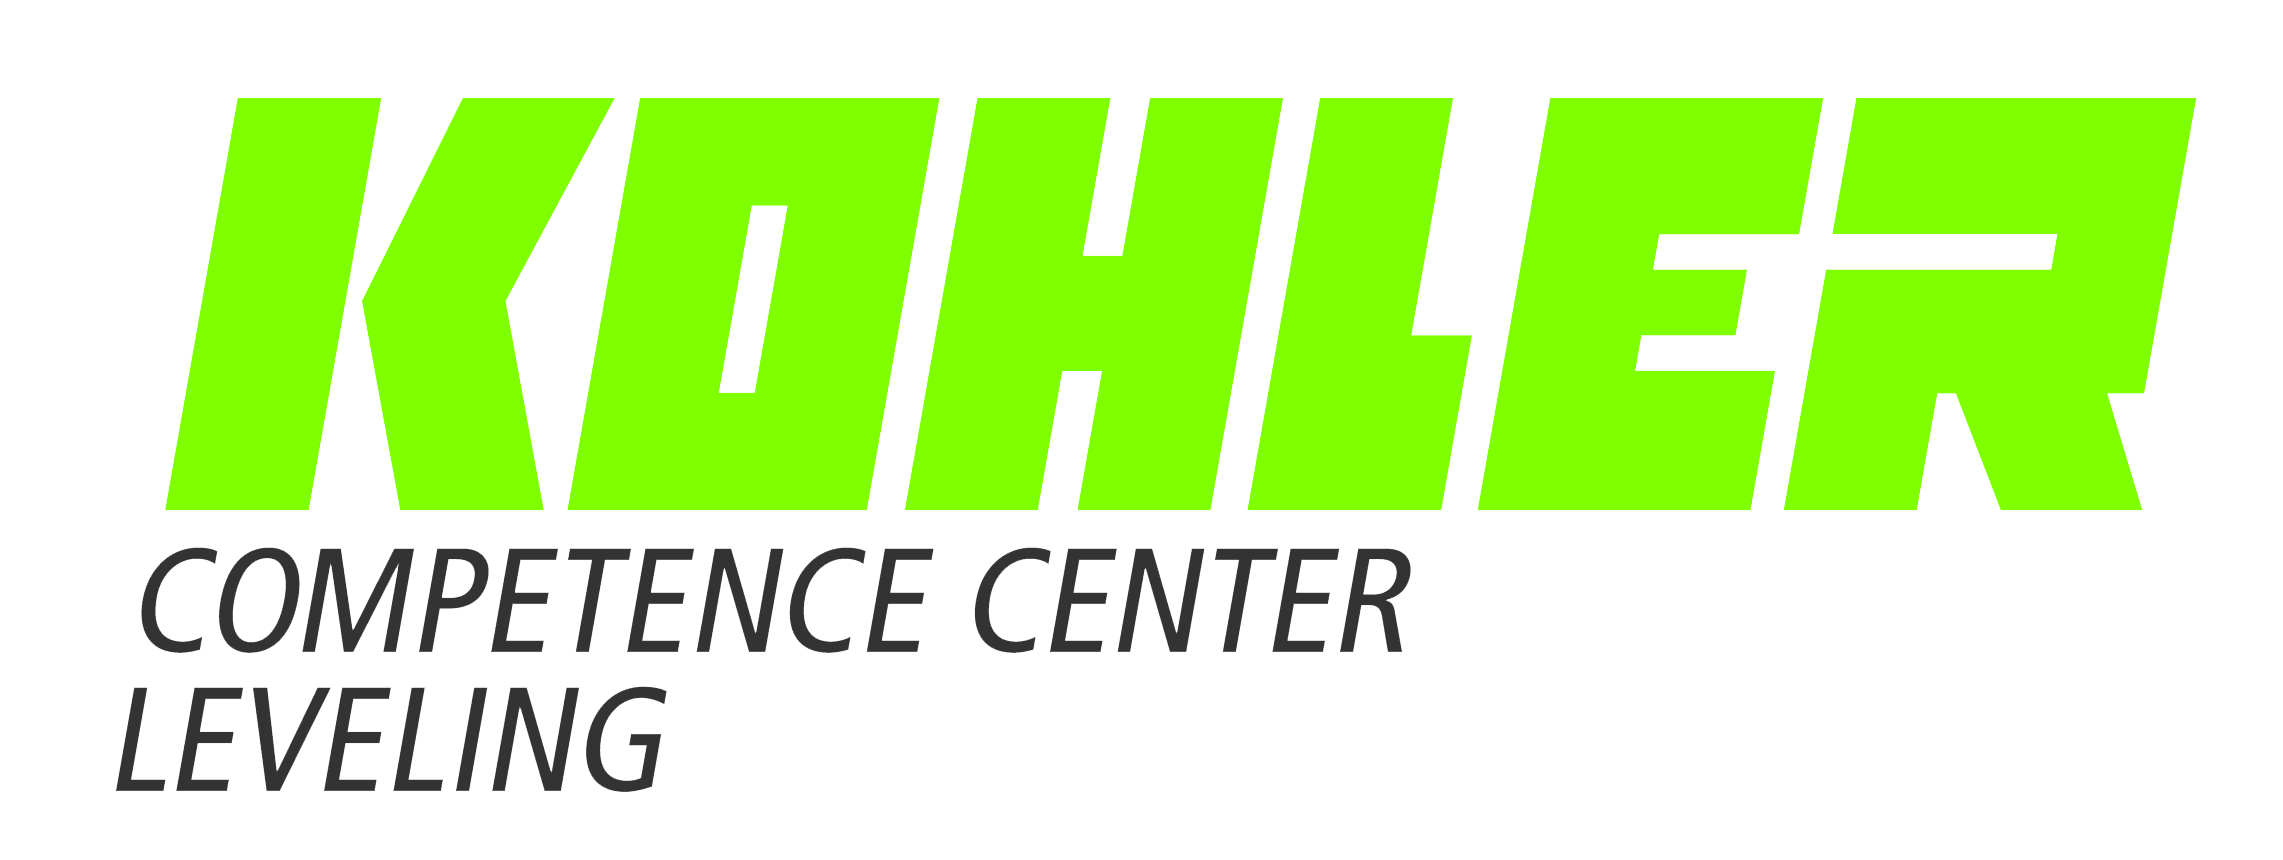 2018 kohler logo en 4c